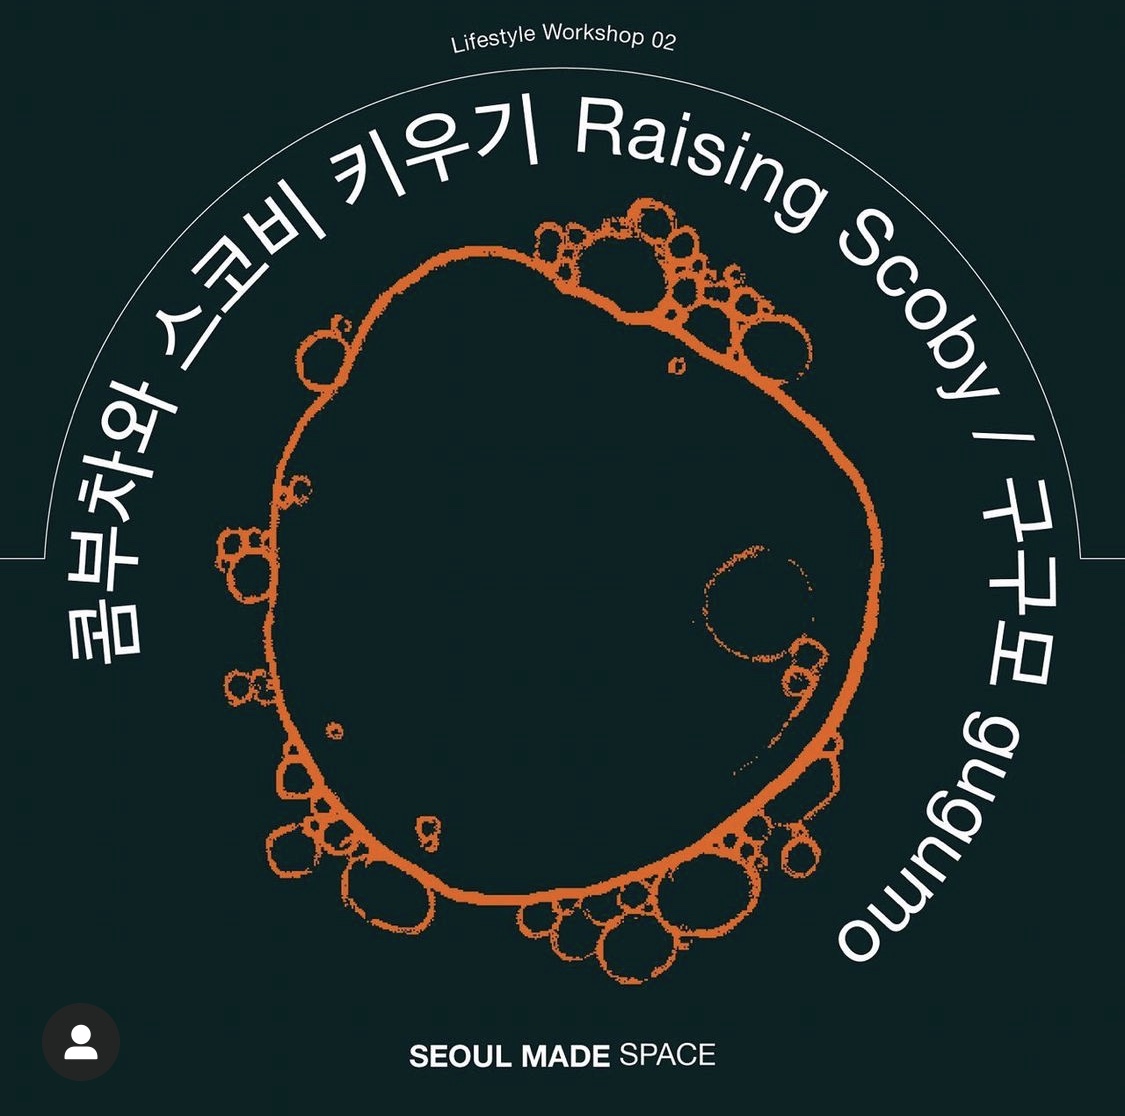 서울메이드 스페이스 라이프스타일 워크샵#2 <콤부차와 스코비 키우기> 영상 공개